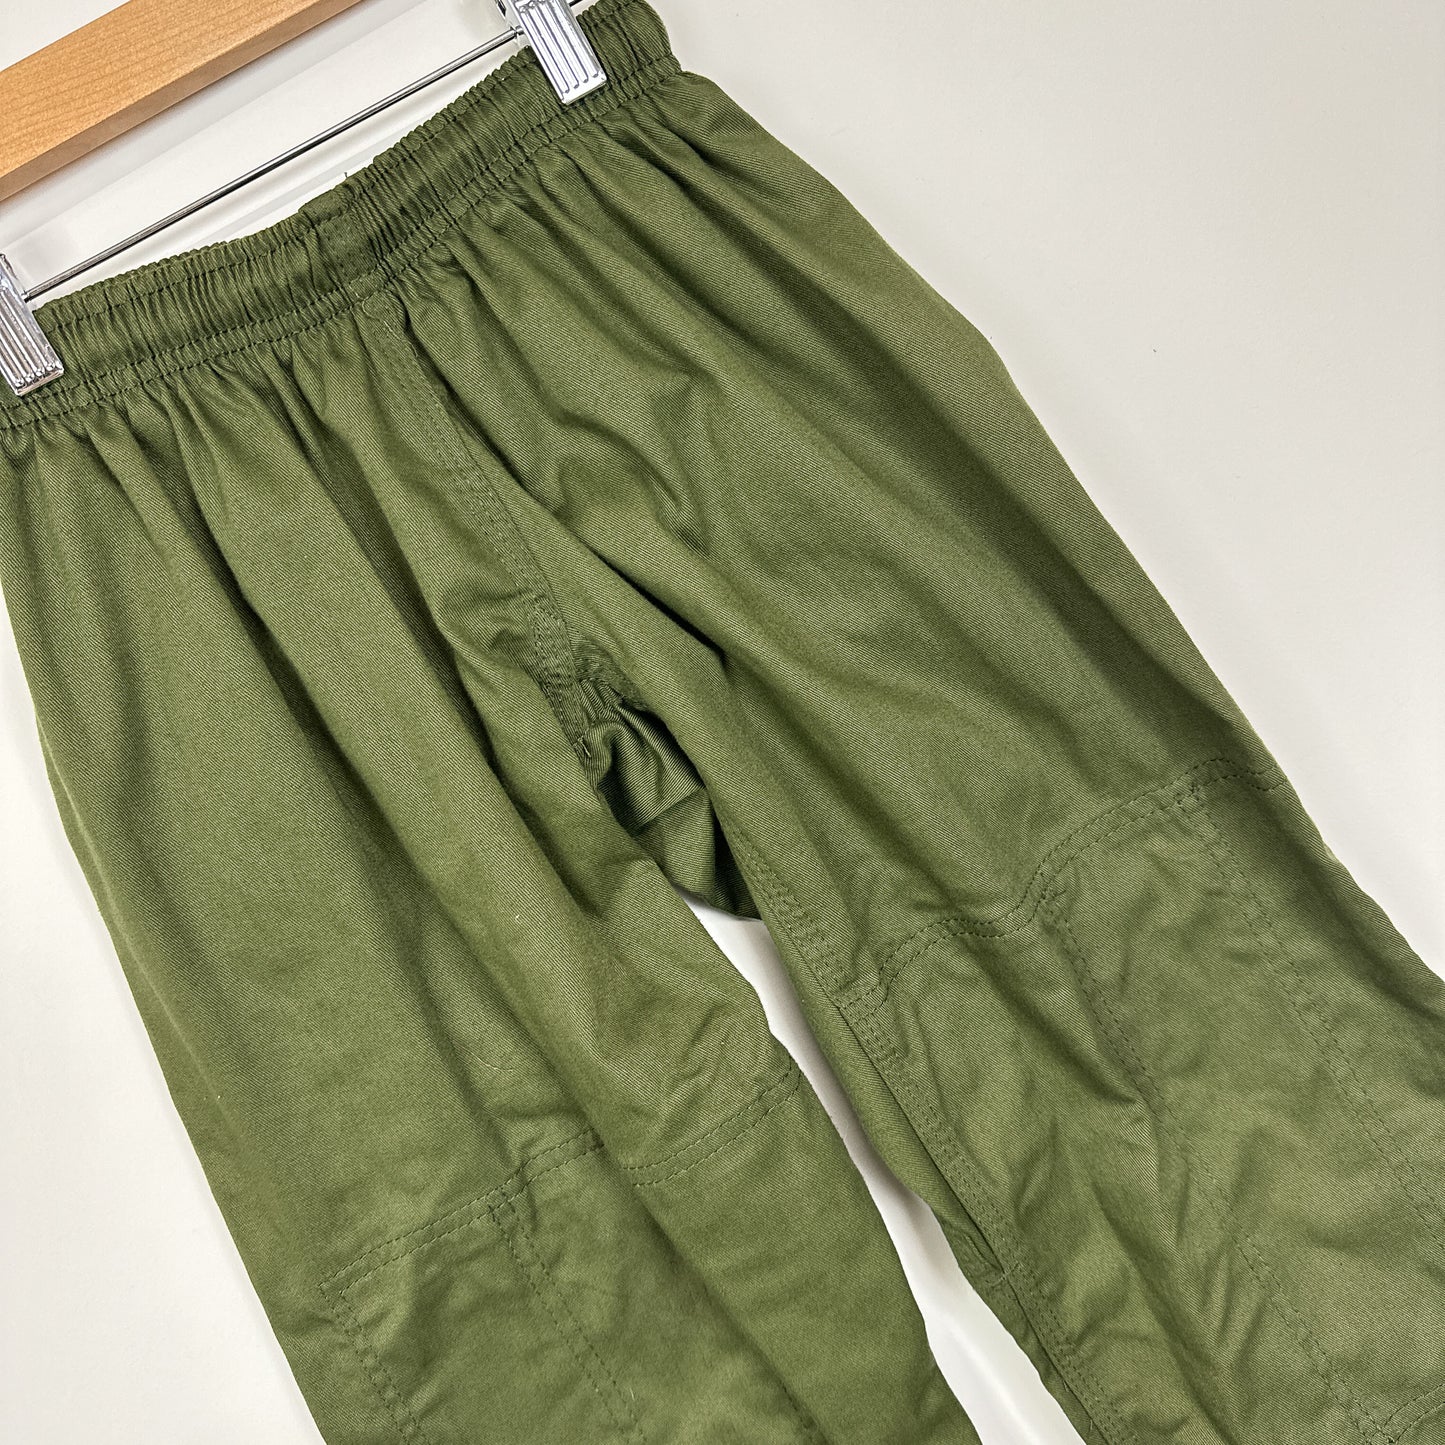 Kids Army Green Gi Pants - 8yr